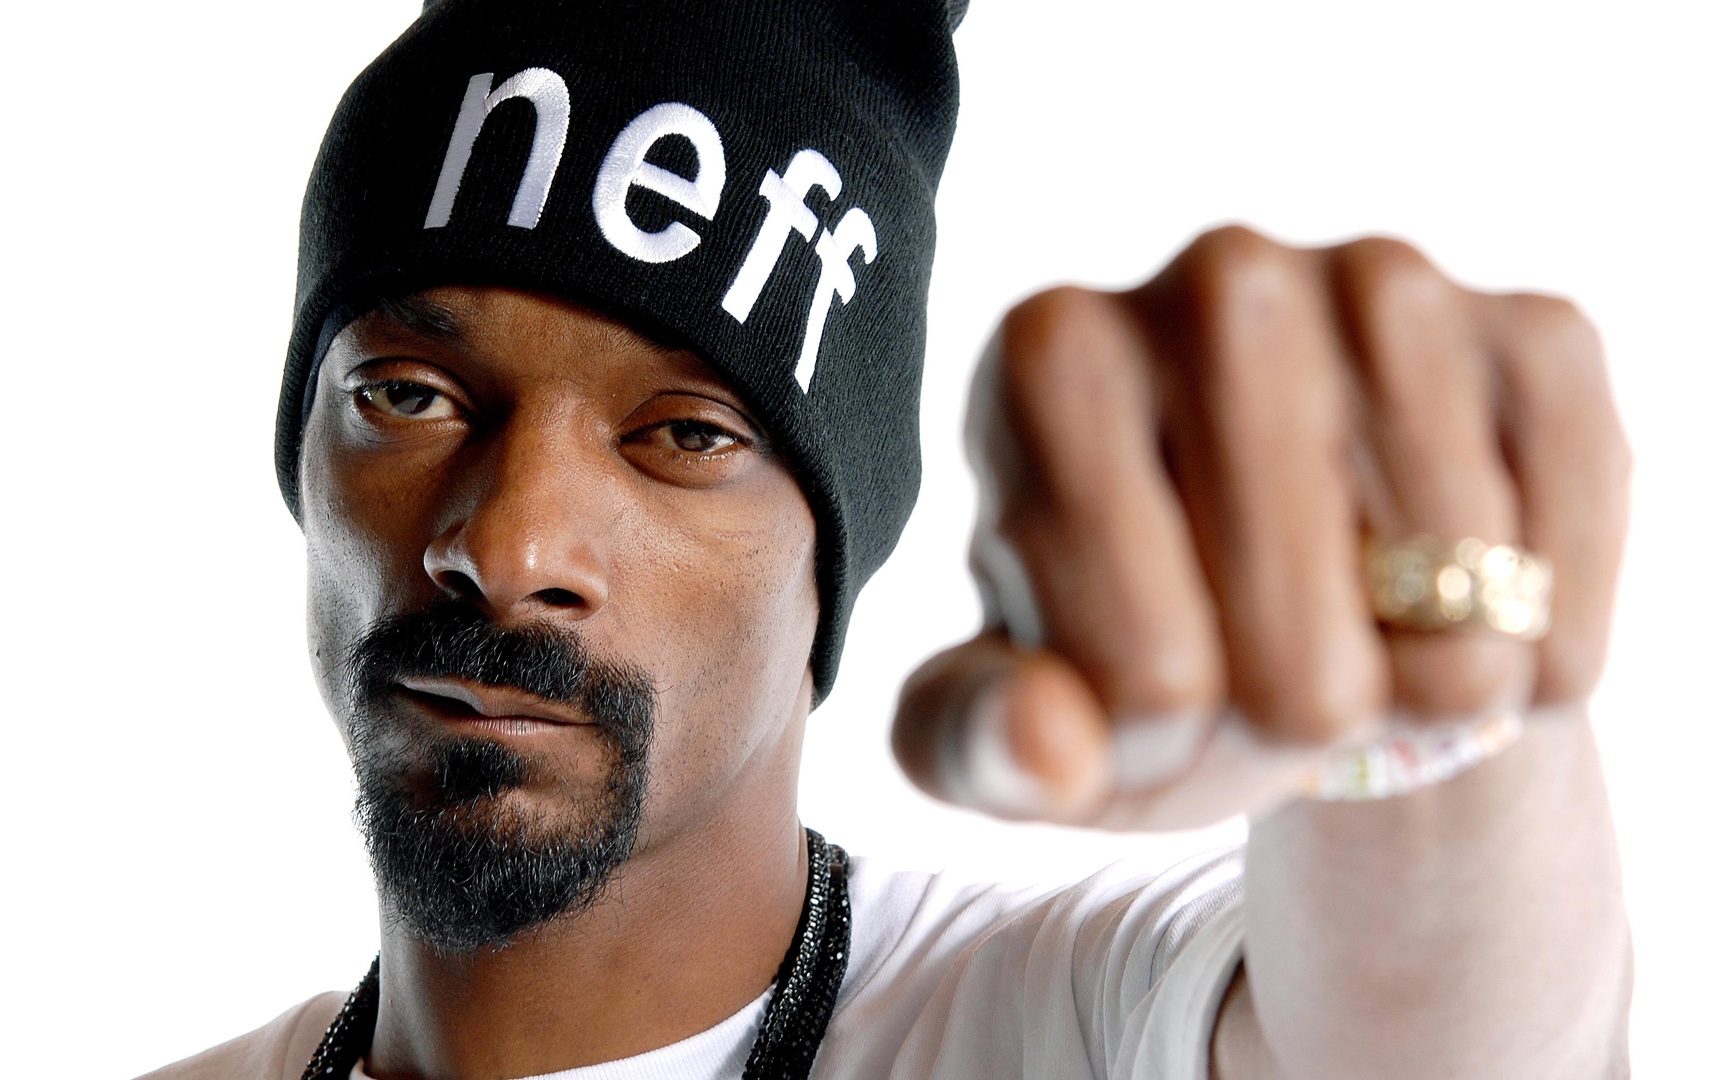 Poze Snoop Dogg - Actor - Poza 2 din 39 - CineMagia.ro